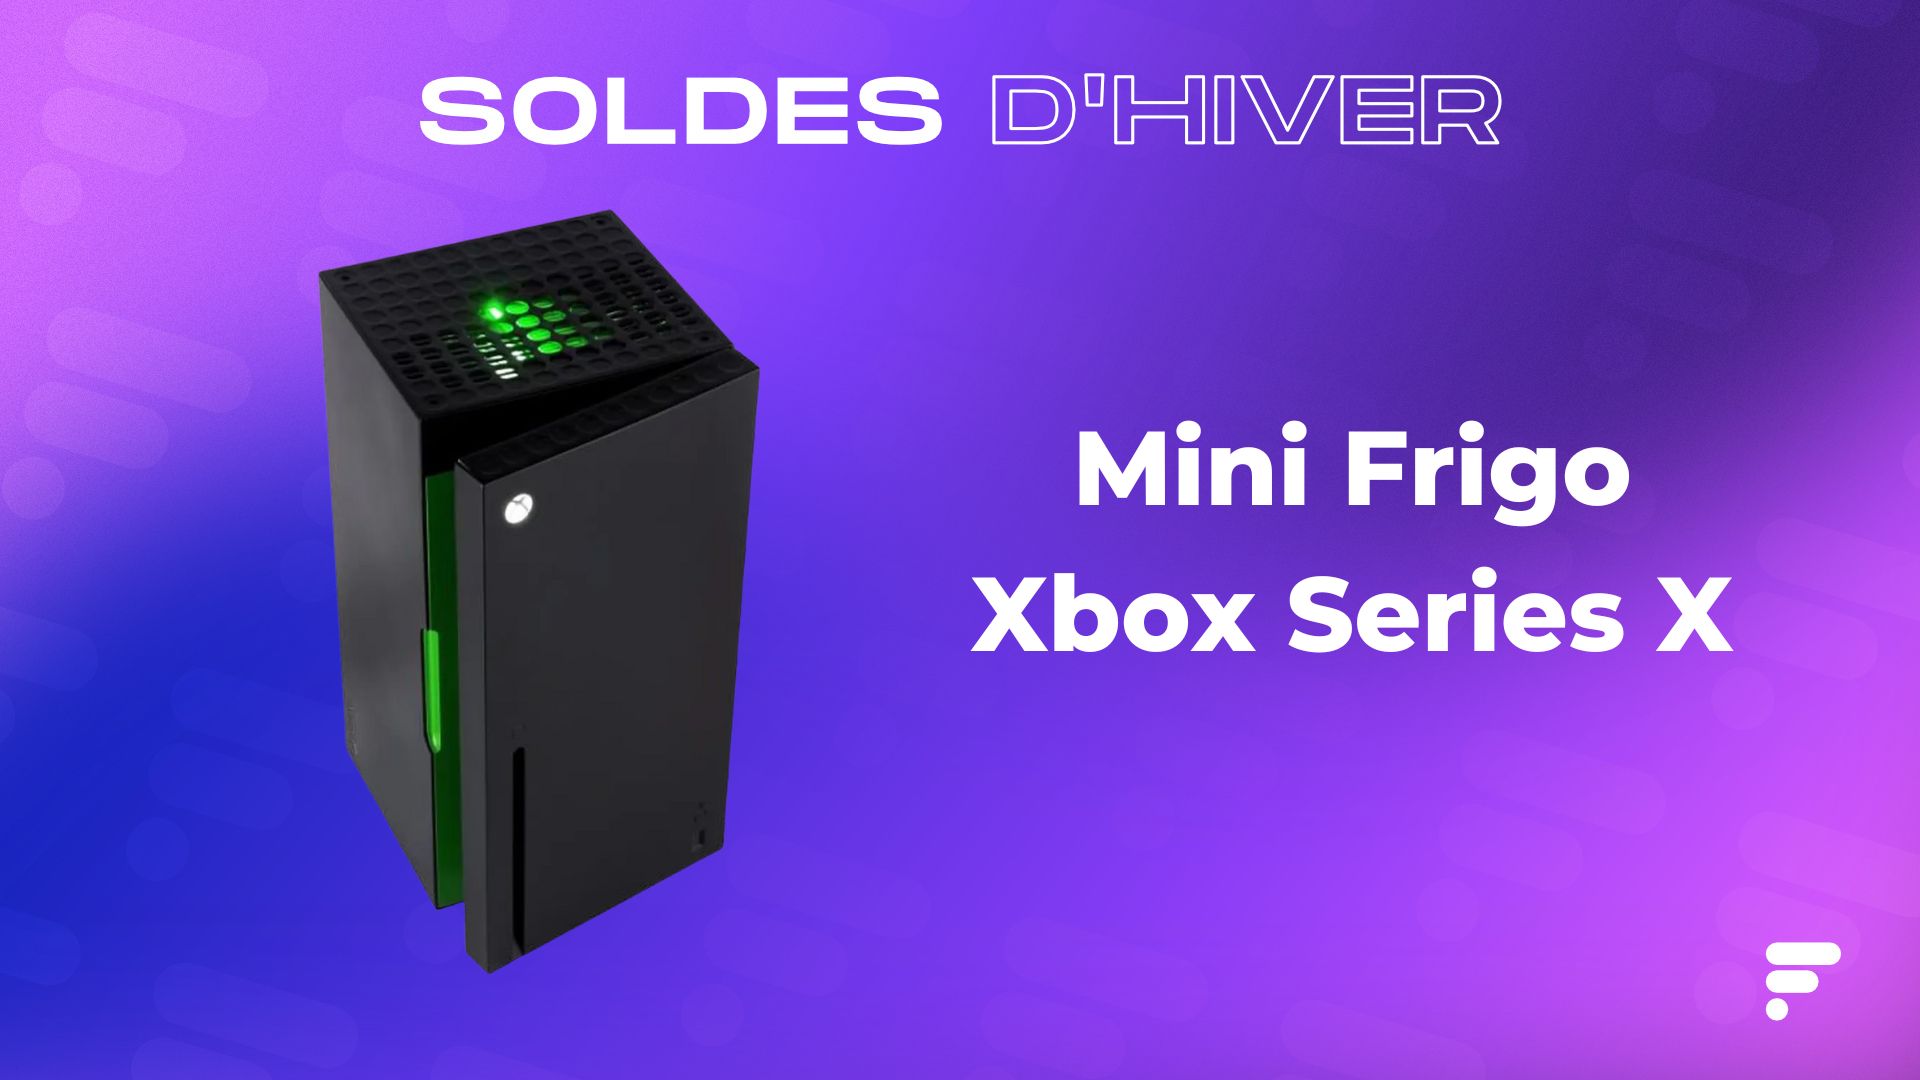 Le rafraîchissant Mini frigo Xbox Series X est moins cher pendant les soldes